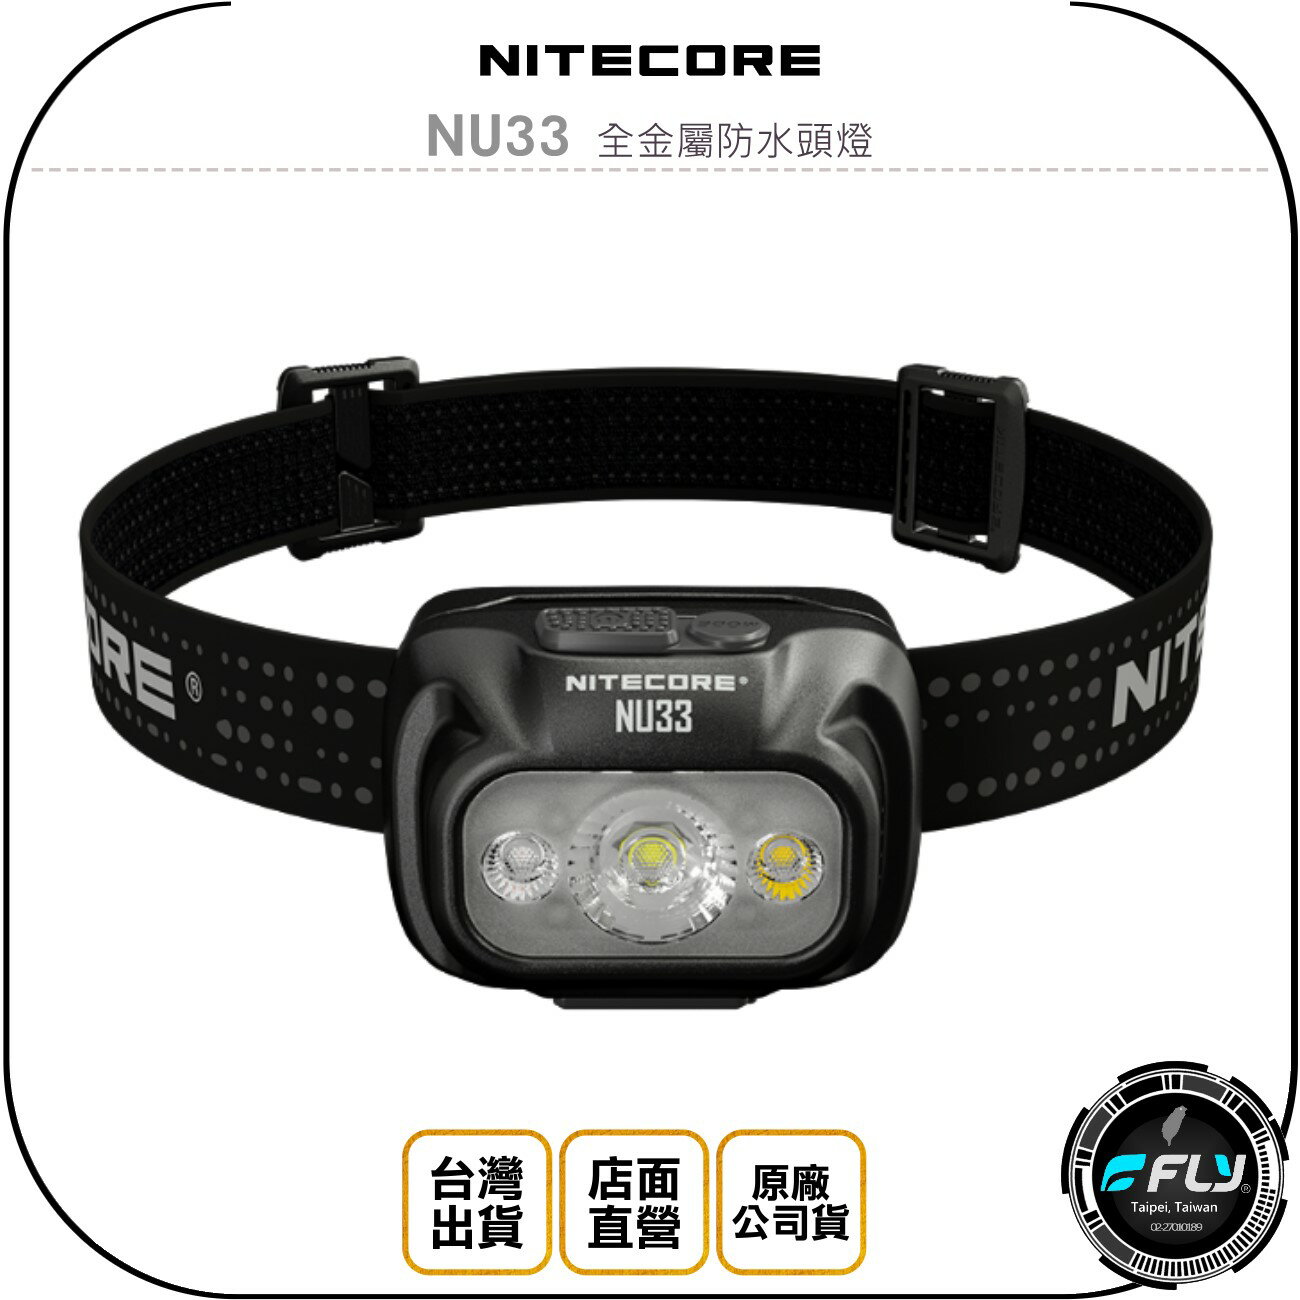 《飛翔無線3C》NITECORE 奈特科爾 NU33 全金屬防水頭燈◉公司貨◉登山露營◉旅遊照明◉TYPE-C充電